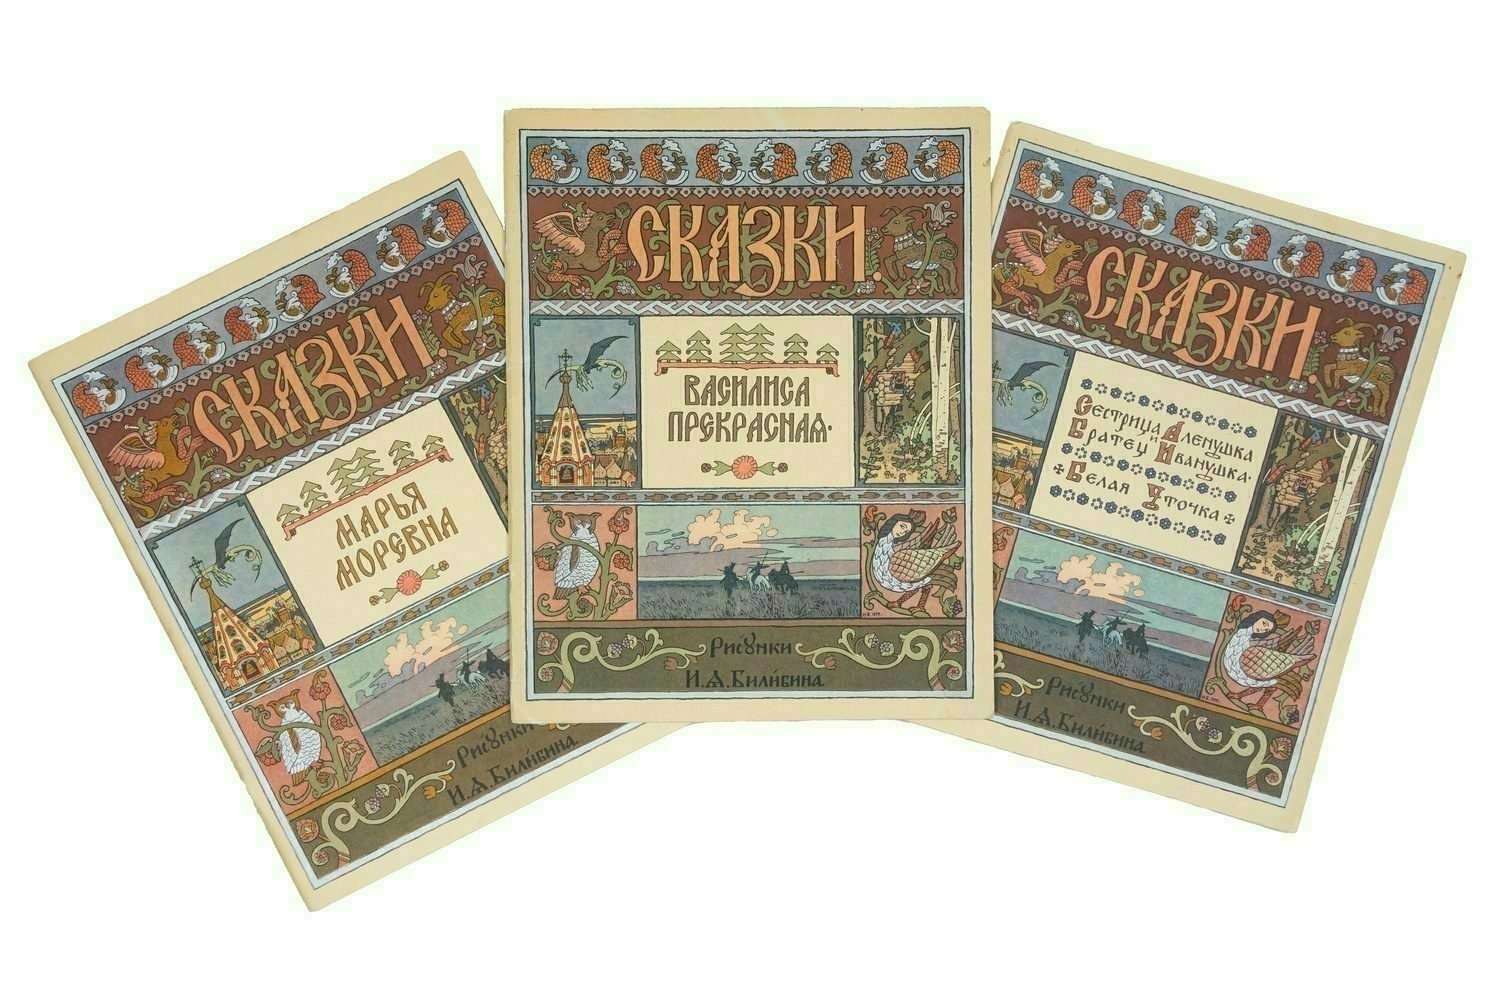 3 издания русских сказок с иллюстрациями И.Я. Билибина. Середина 1960-х годов.